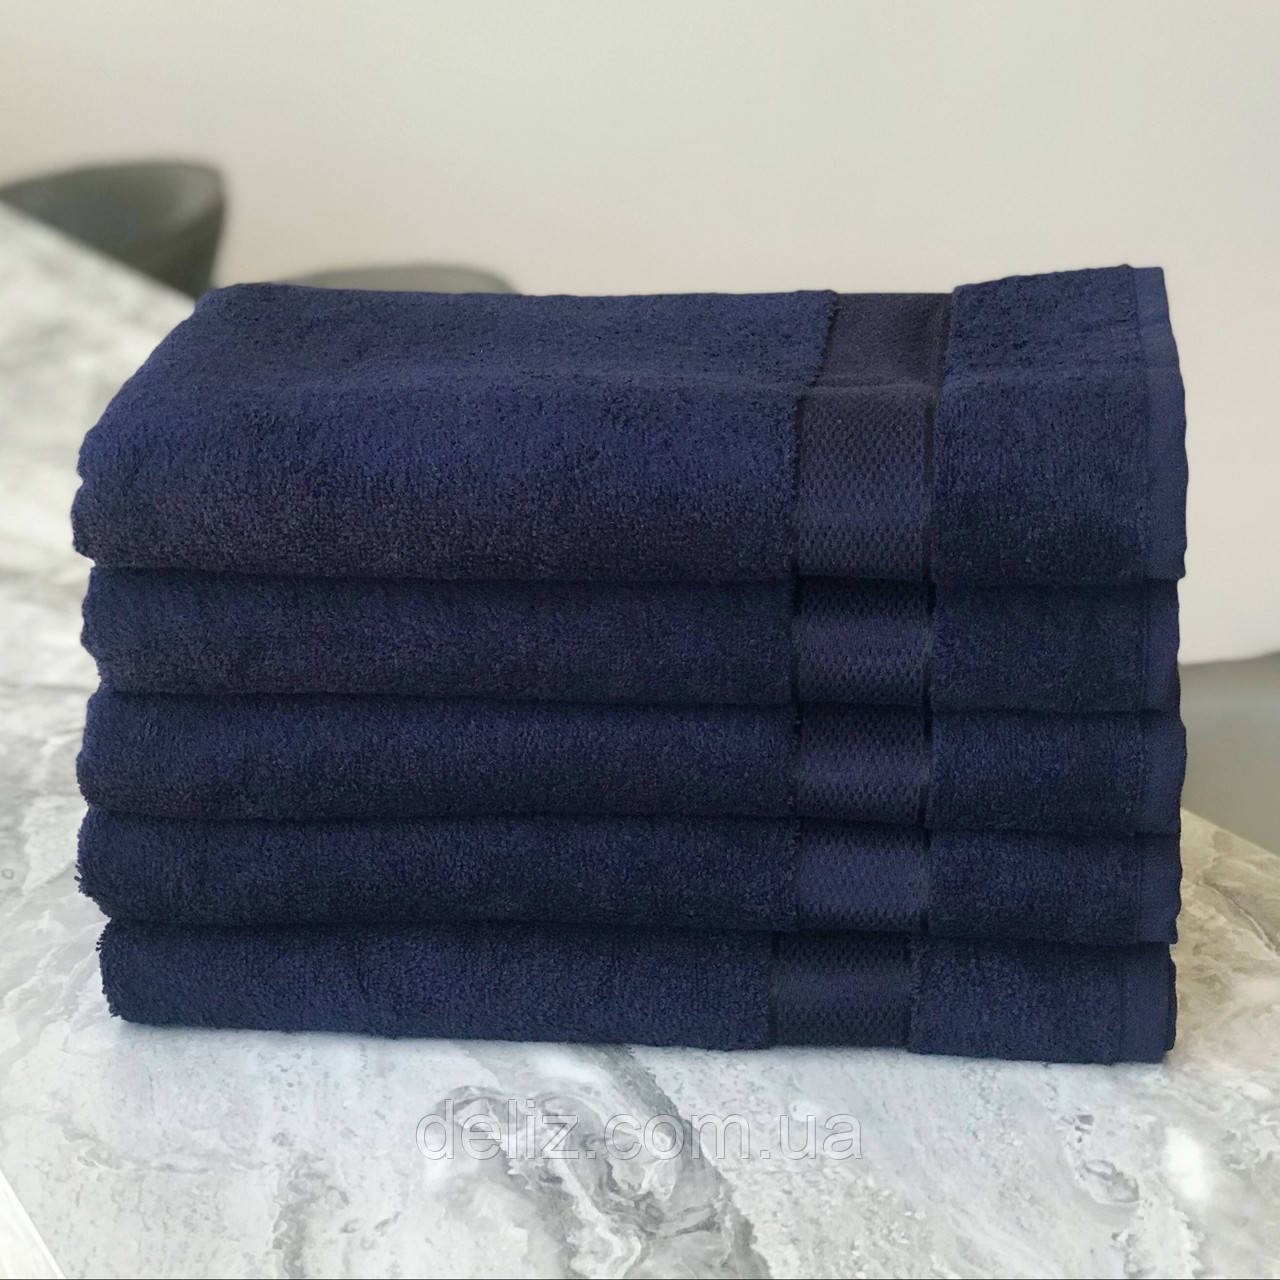 Лазневий рушник Aisha Home Textile 6061 (Узбекістан) 140х70. 100% бавовна, якість відмінна, колір темно-синій